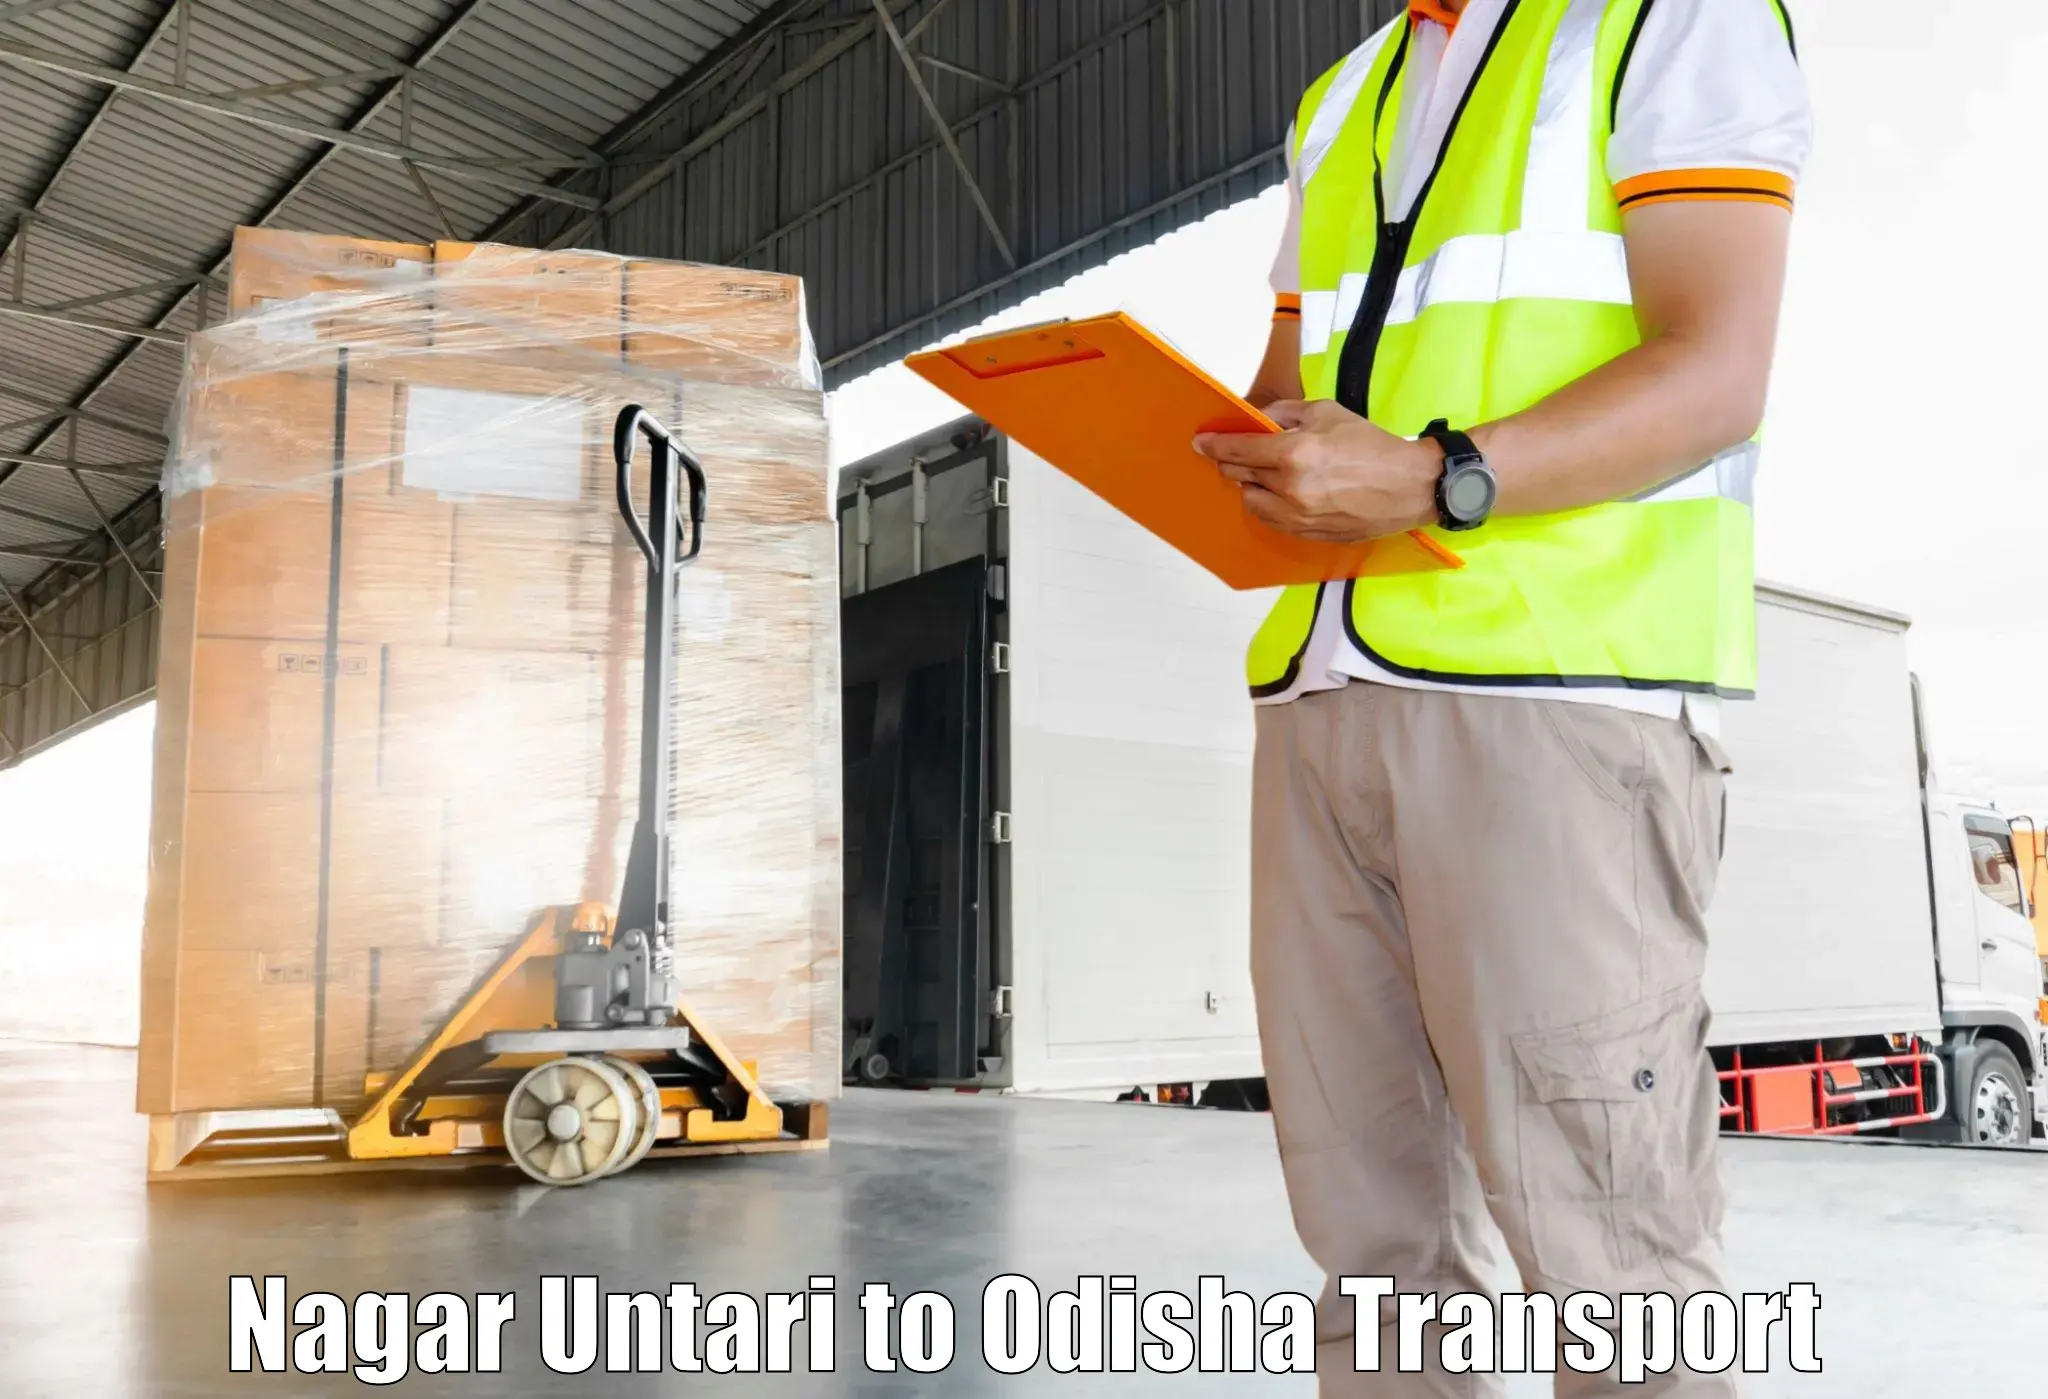 Furniture transport service Nagar Untari to Paralakhemundi